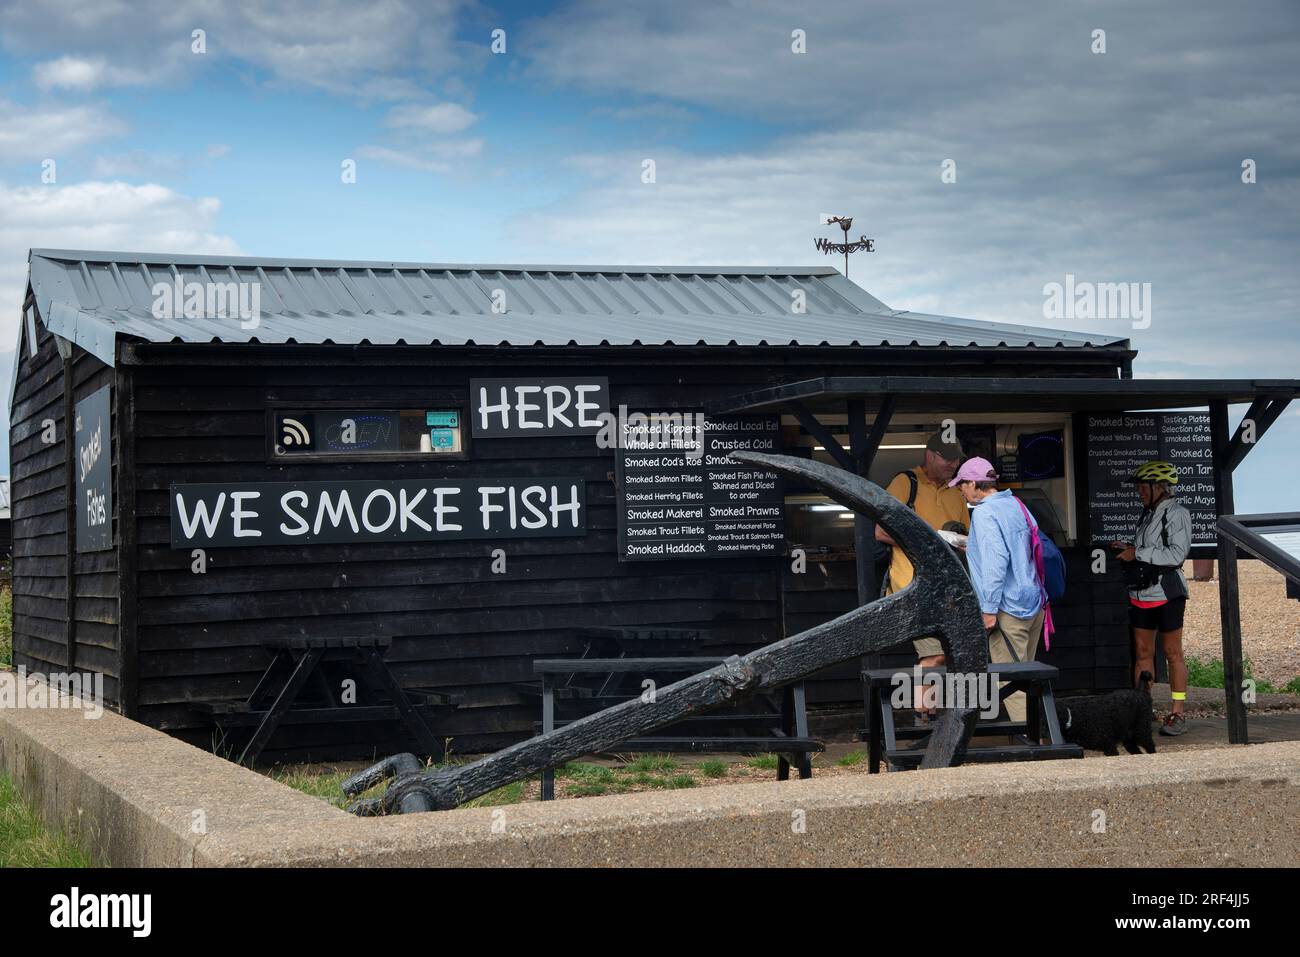 Les clients achètent dans un fumoir de poisson traditionnel sur la plage de galets dans la ville balnéaire touristique d'Aldeburgh sur la côte du Suffolk, Angleterre, Royaume-Uni Banque D'Images